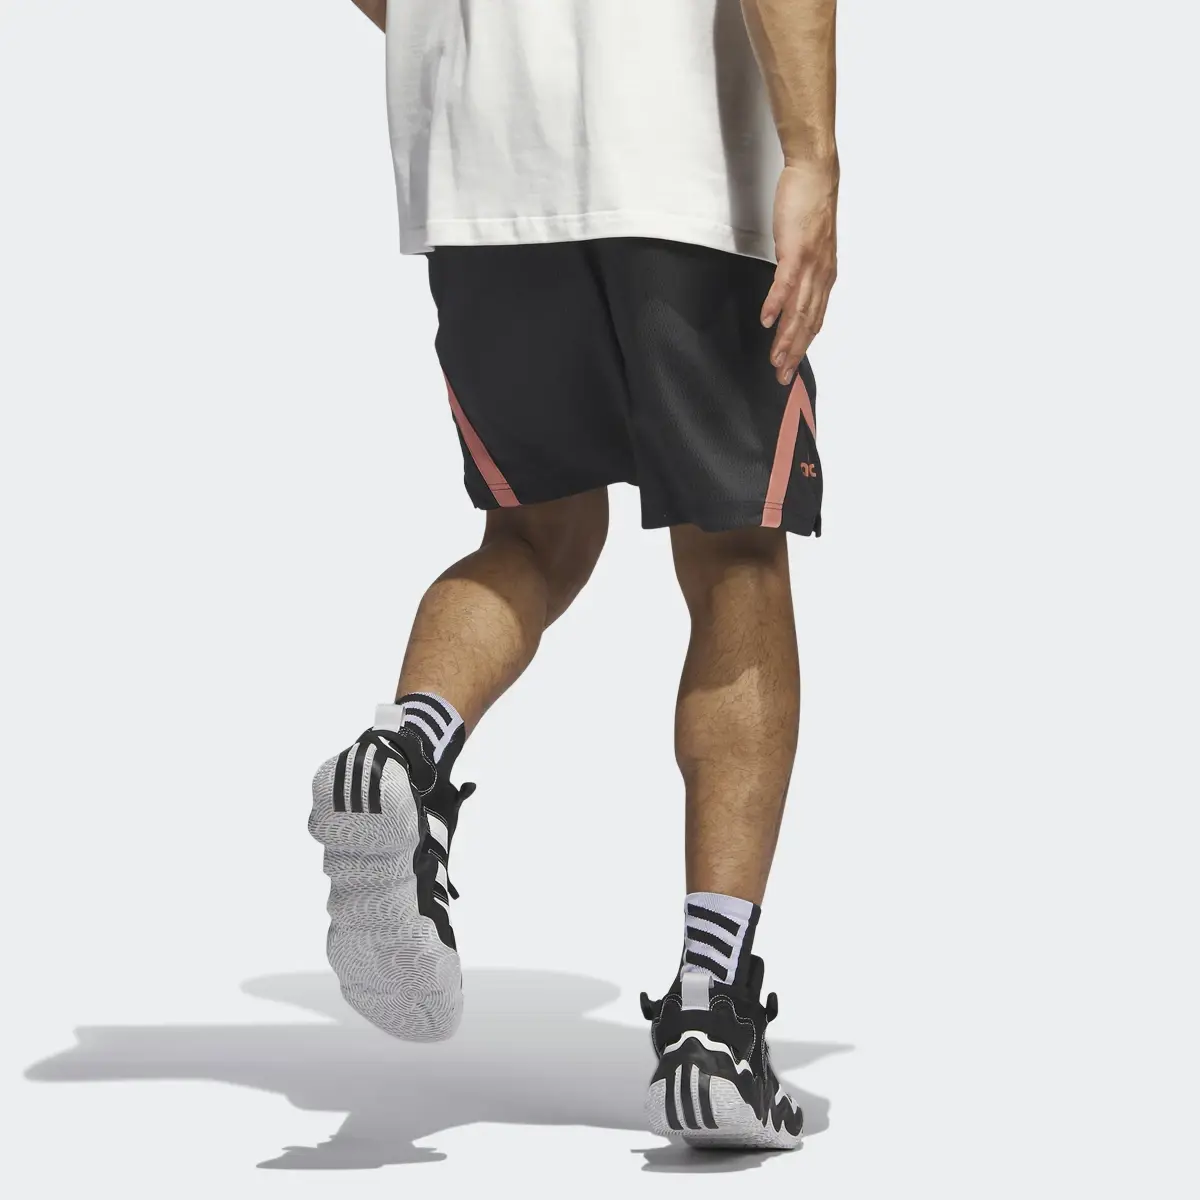 Adidas Select Summer Shorts. 2